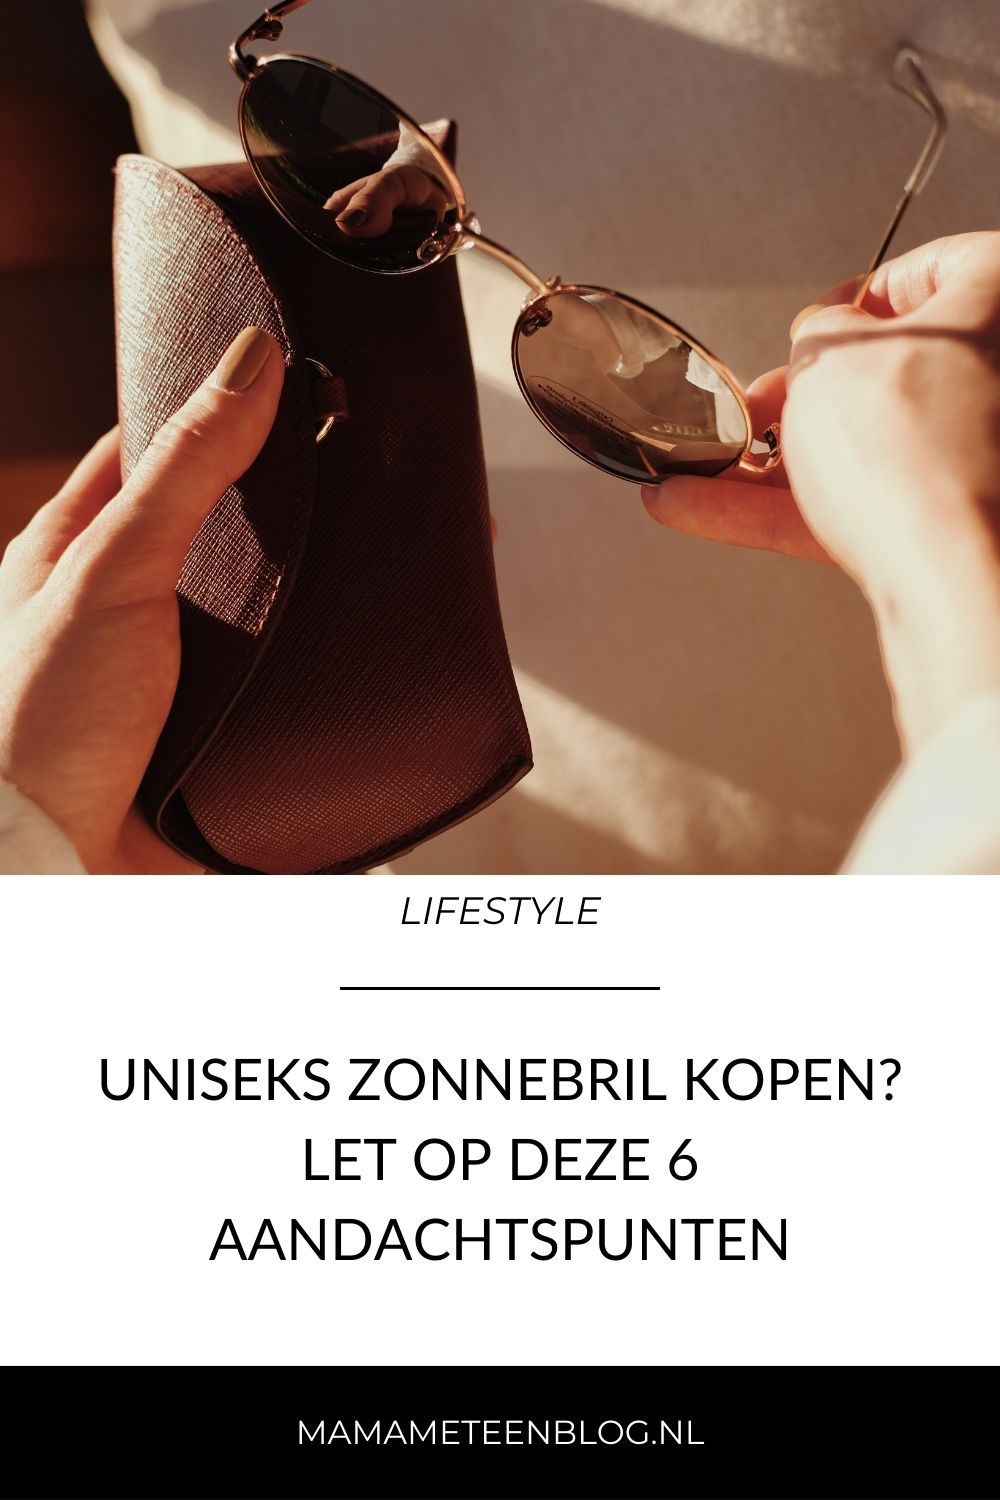 Uniseks zonnebril kopen Let op deze 6 aandachtspunten mamameteenblog.nl